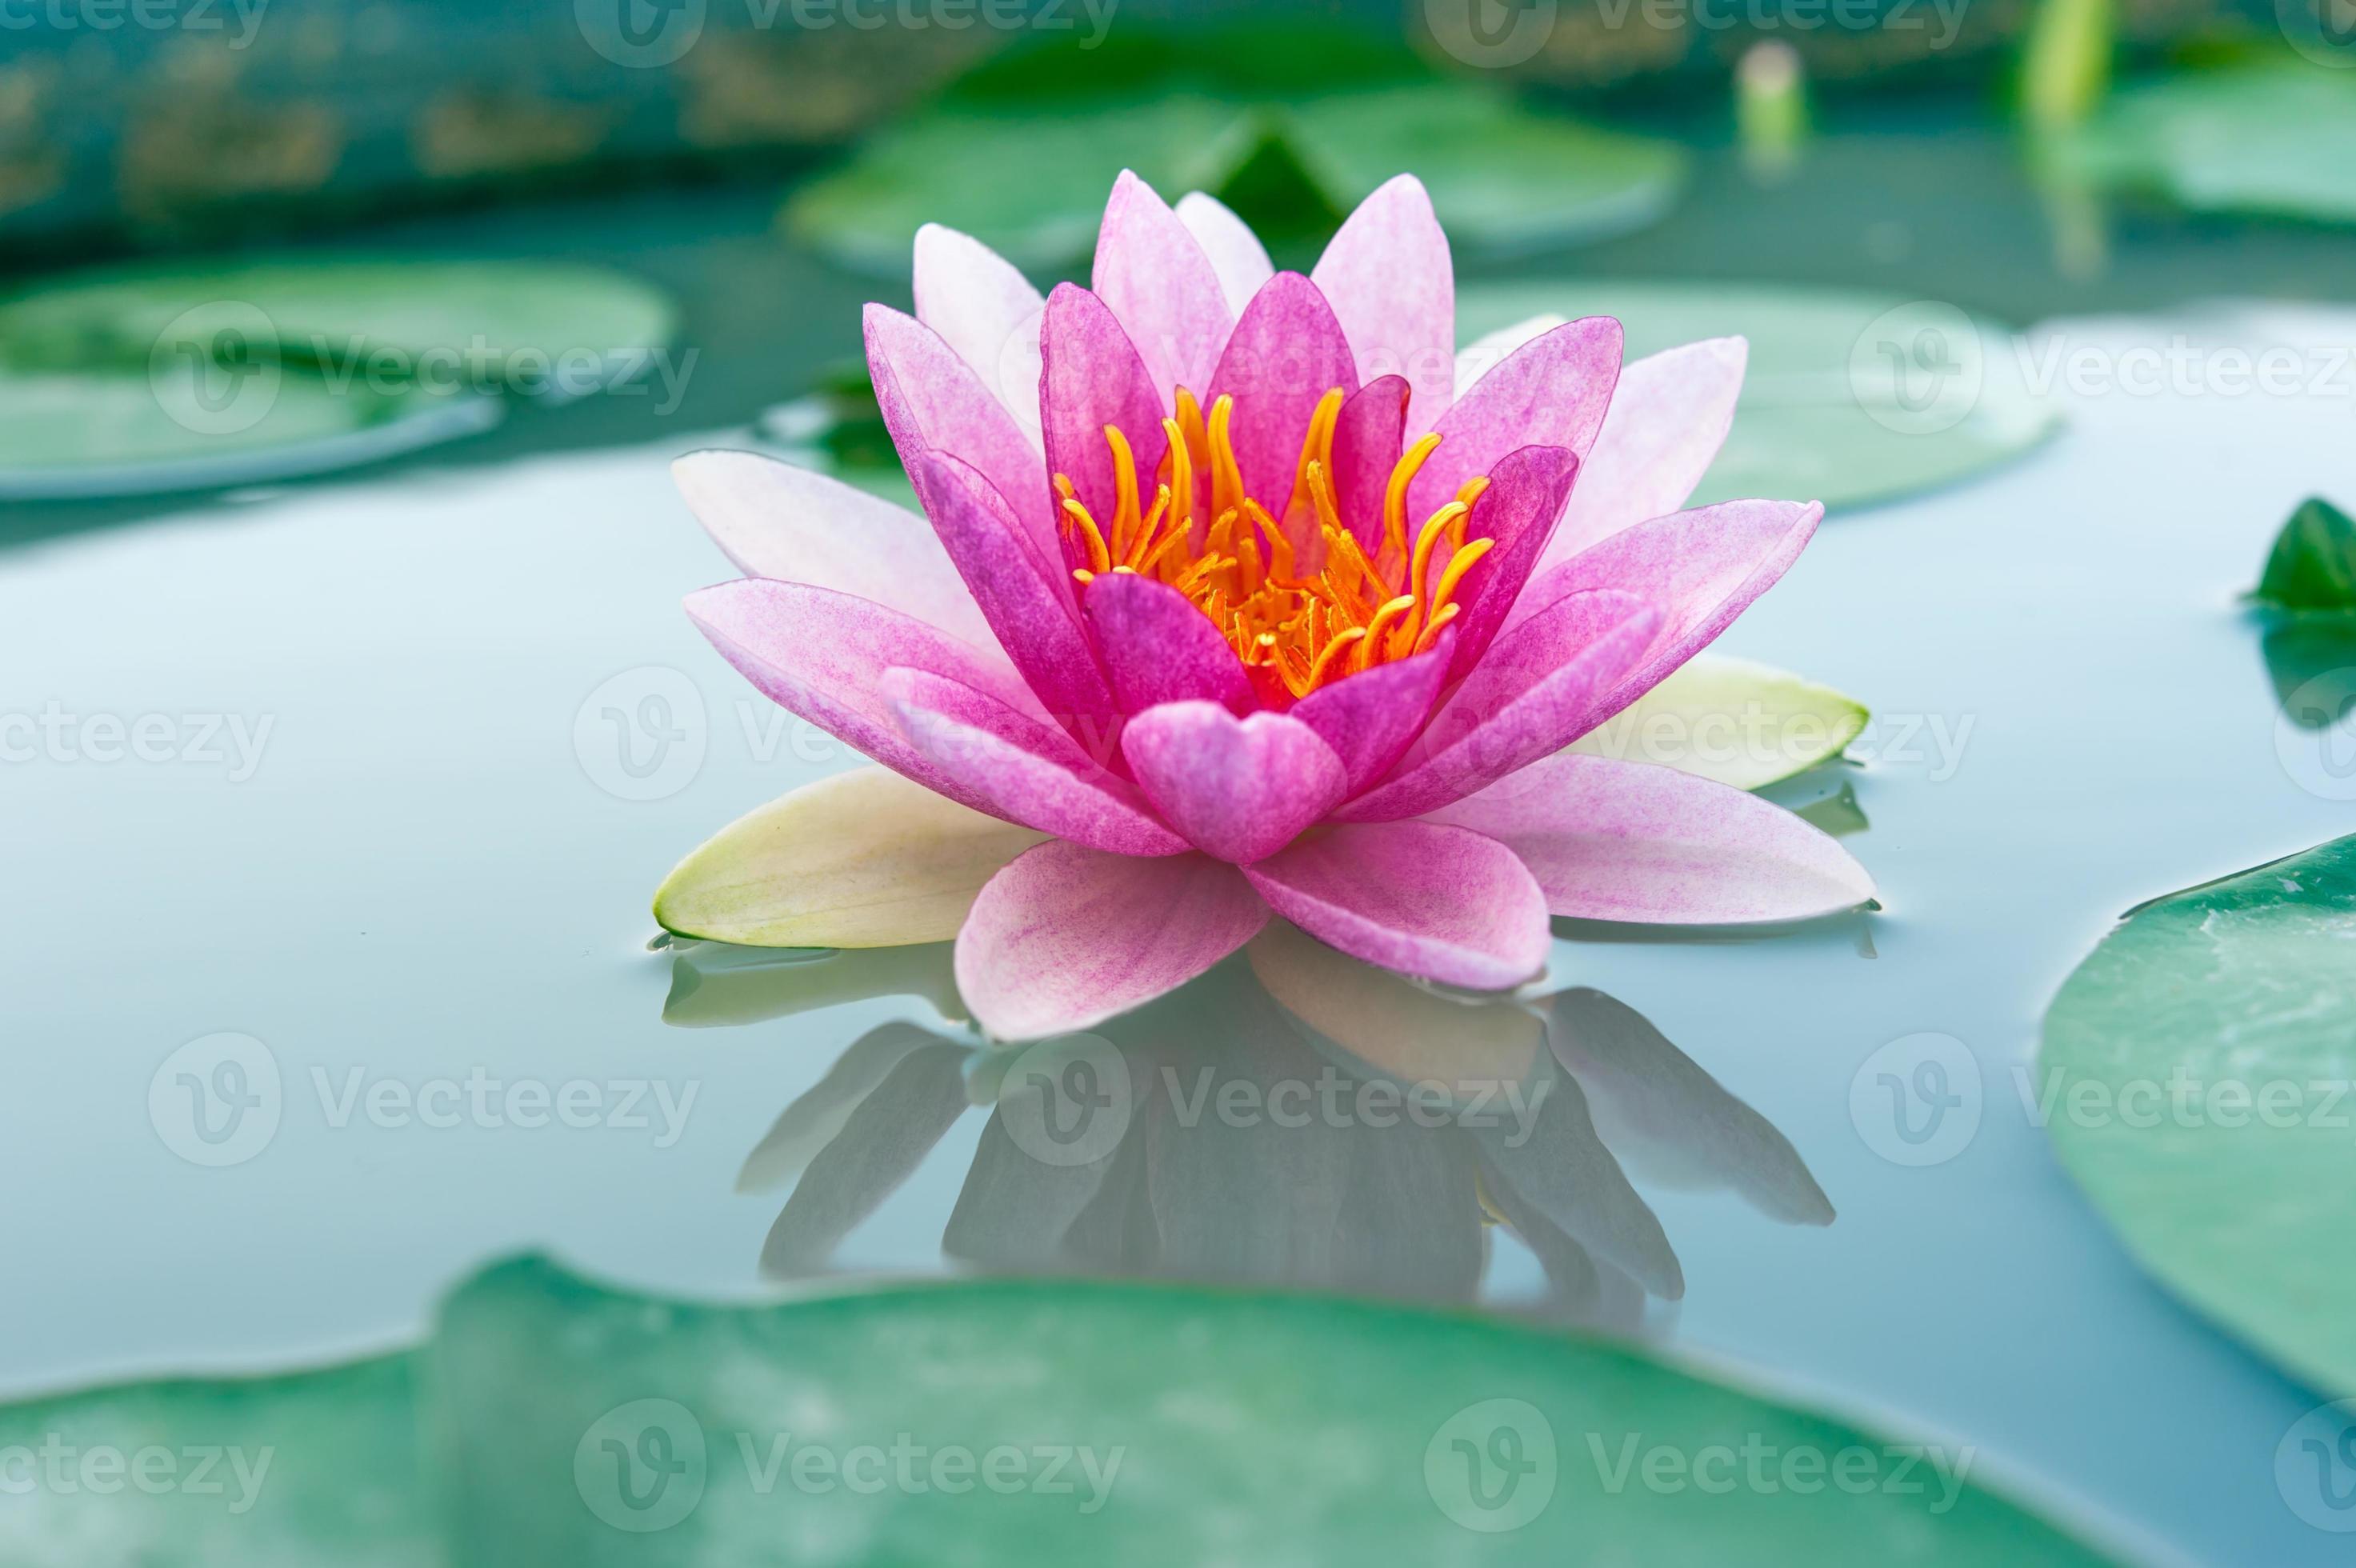 mooie waterlelie of lotusbloem in een vijver foto